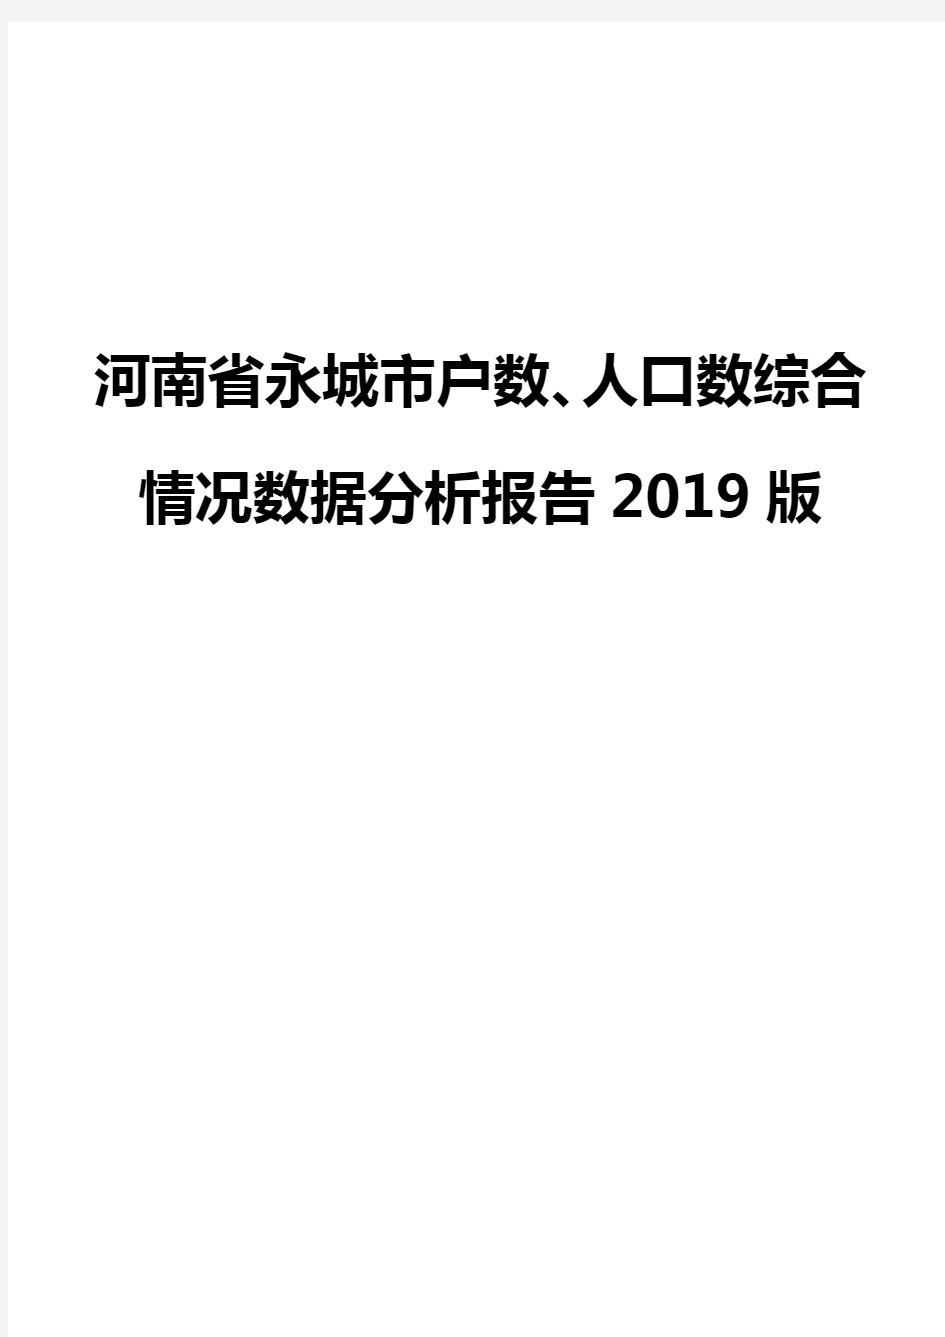 河南省永城市户数、人口数综合情况数据分析报告2019版